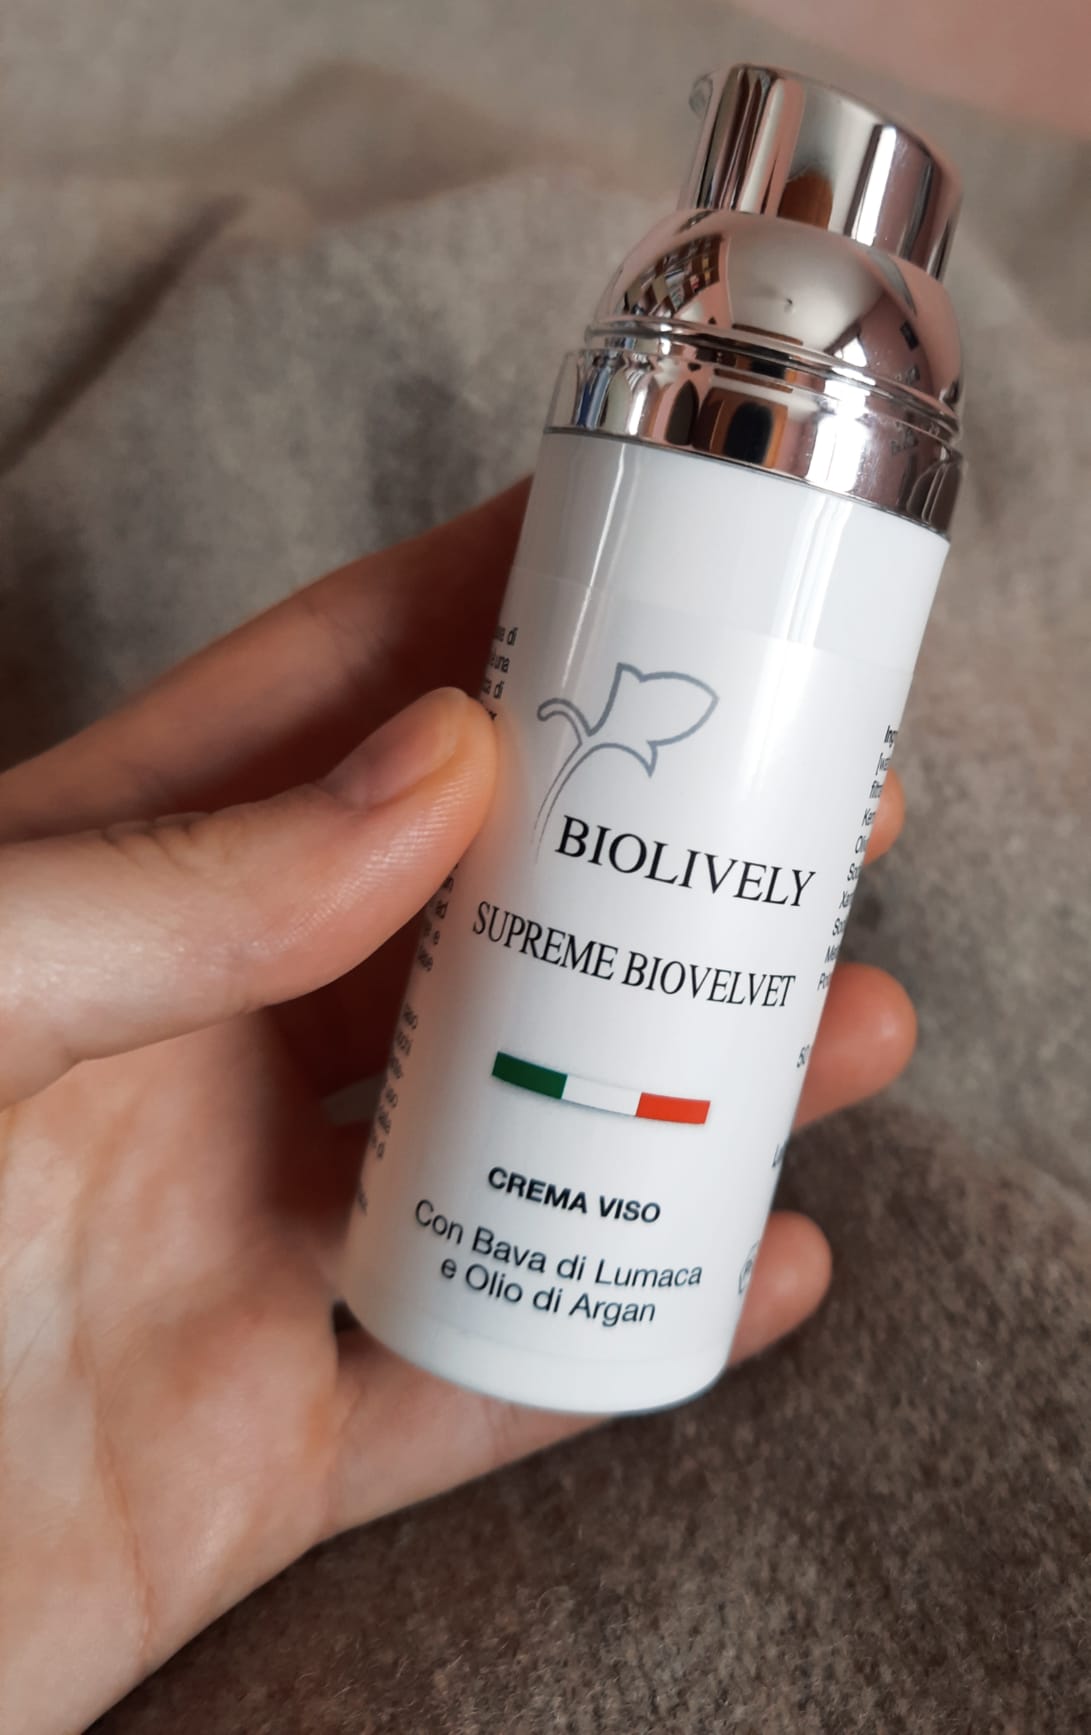 Supreme Biovelvet | Crema Viso con Bava di Lumaca e Olio di Argan 50 ml